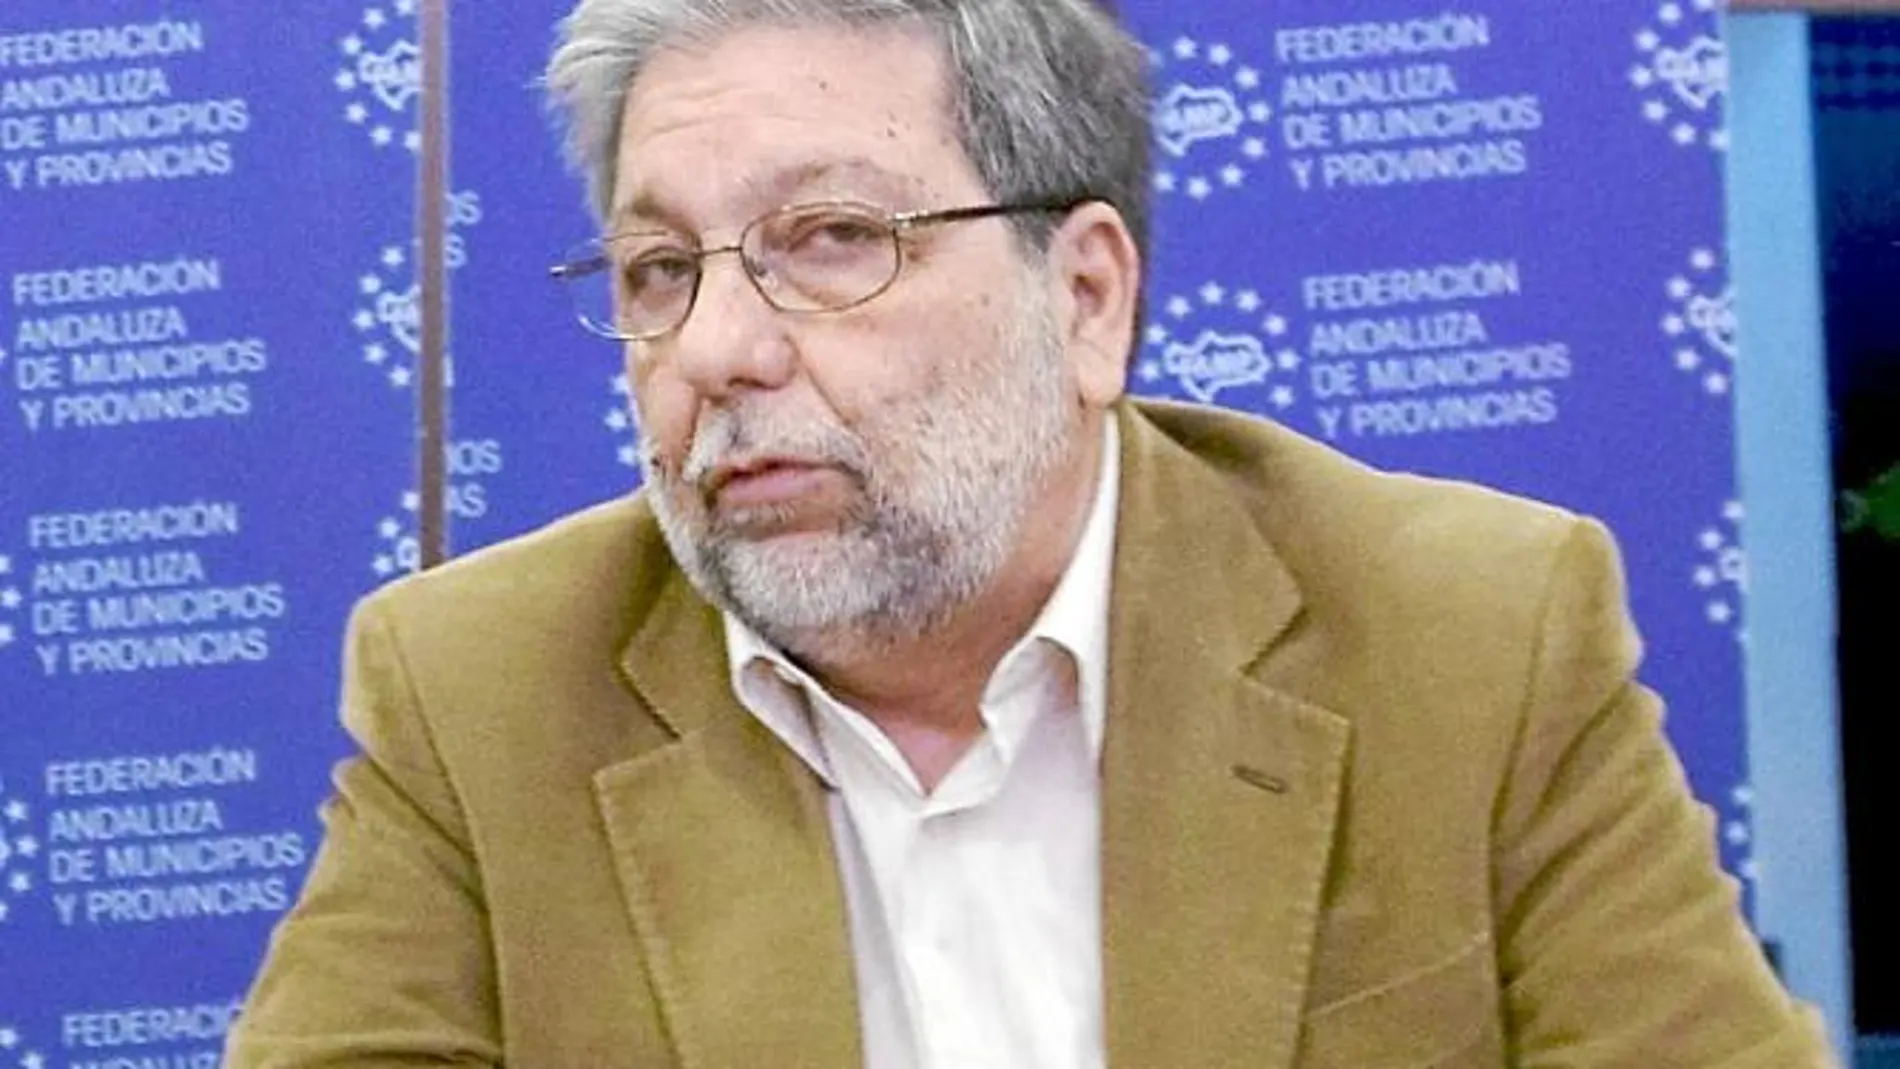 El presidente de la Federación Andaluza de Municipios y Provincias, Francisco Toscano